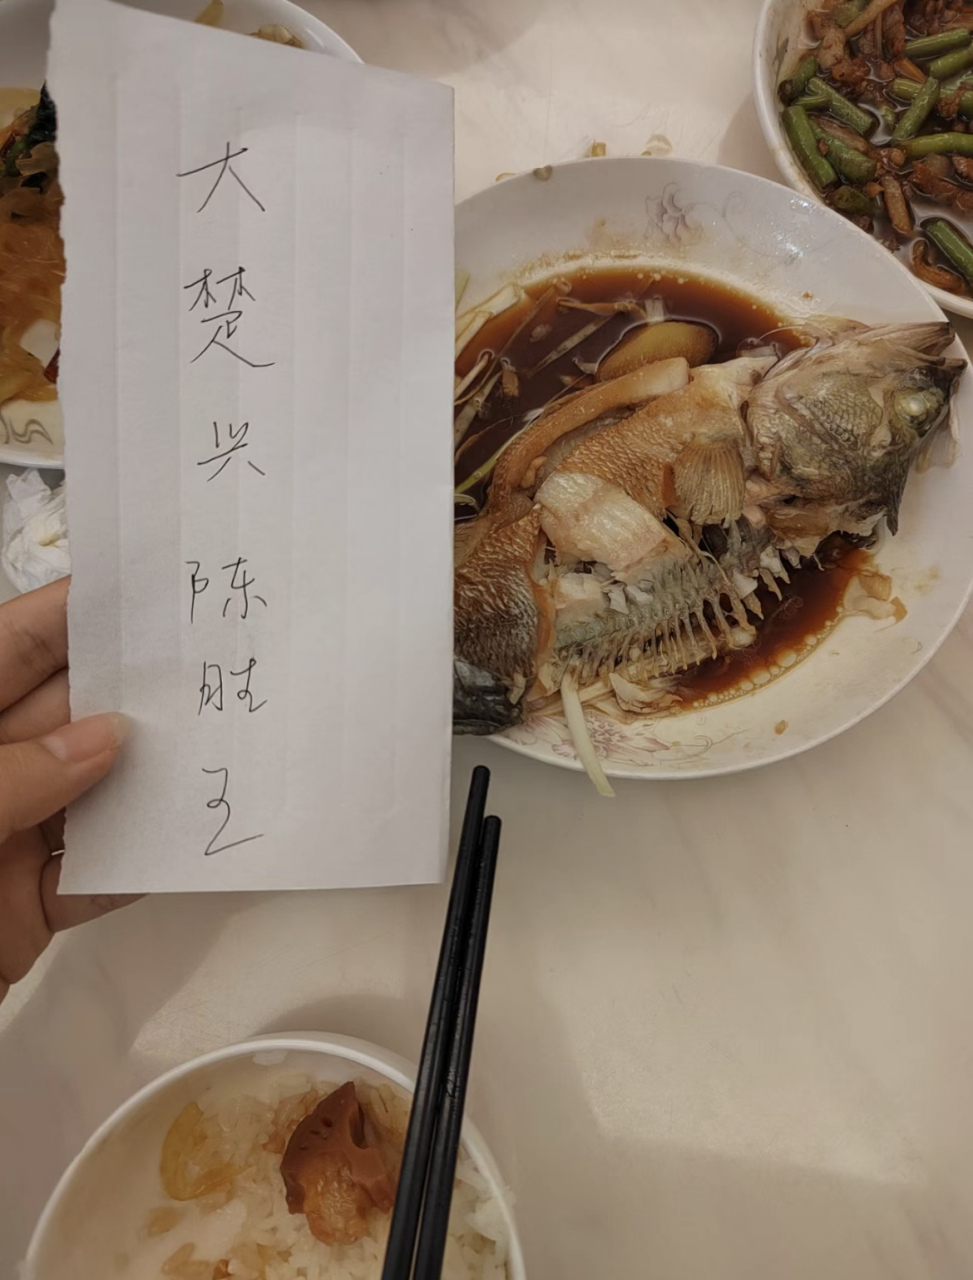 网友:大学生吃鱼吃出了"大楚兴陈胜王"正常吗?